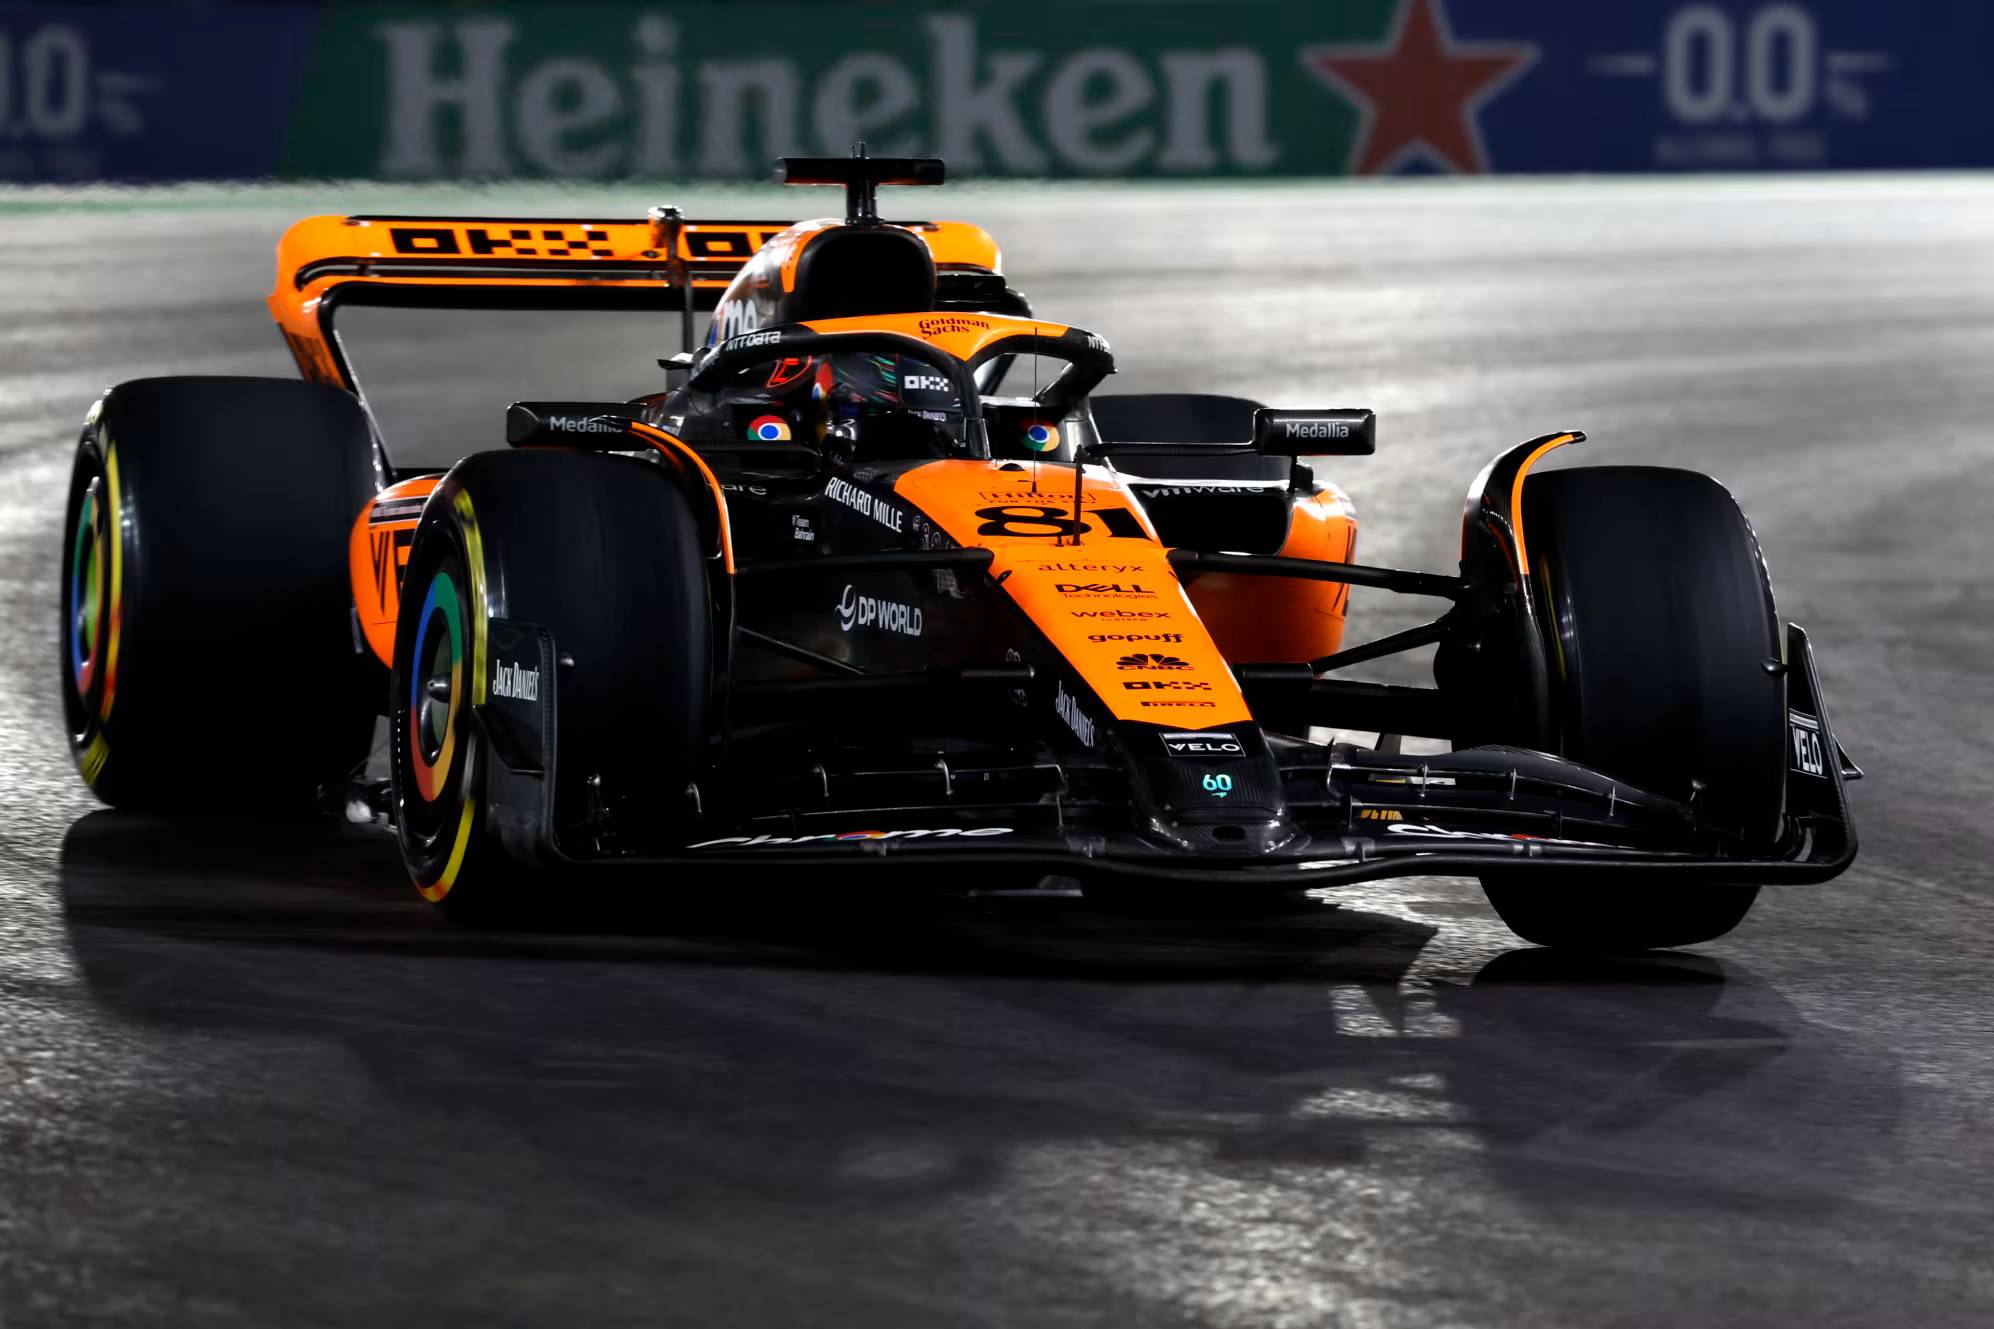 Fórmula-1: Piastri prevê um fim de semana “muito mais competitivo” para a McLaren em meio à disputa com a Aston Martin